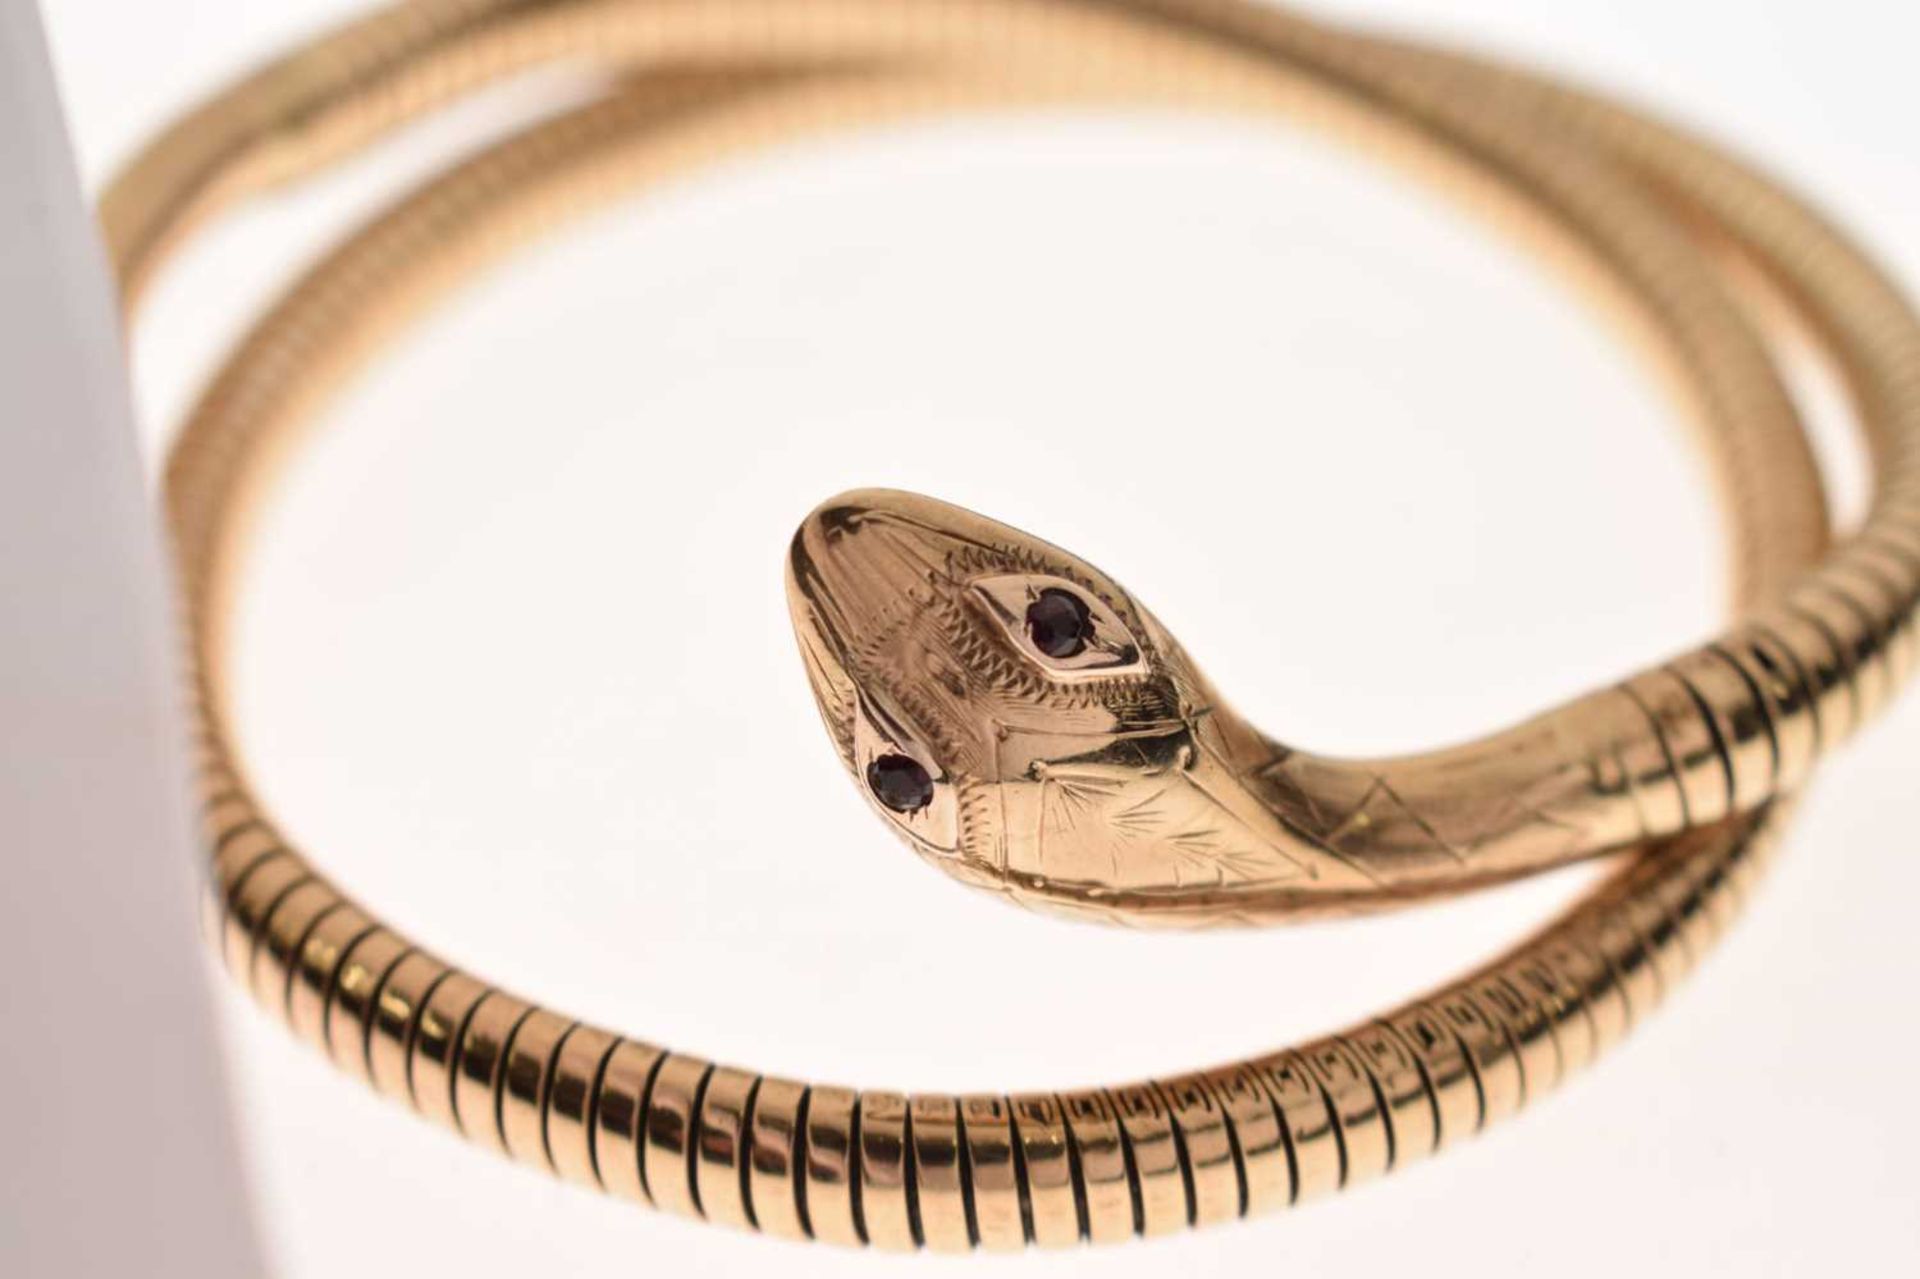 9ct gold and steel spring snake bracelet - Image 6 of 8